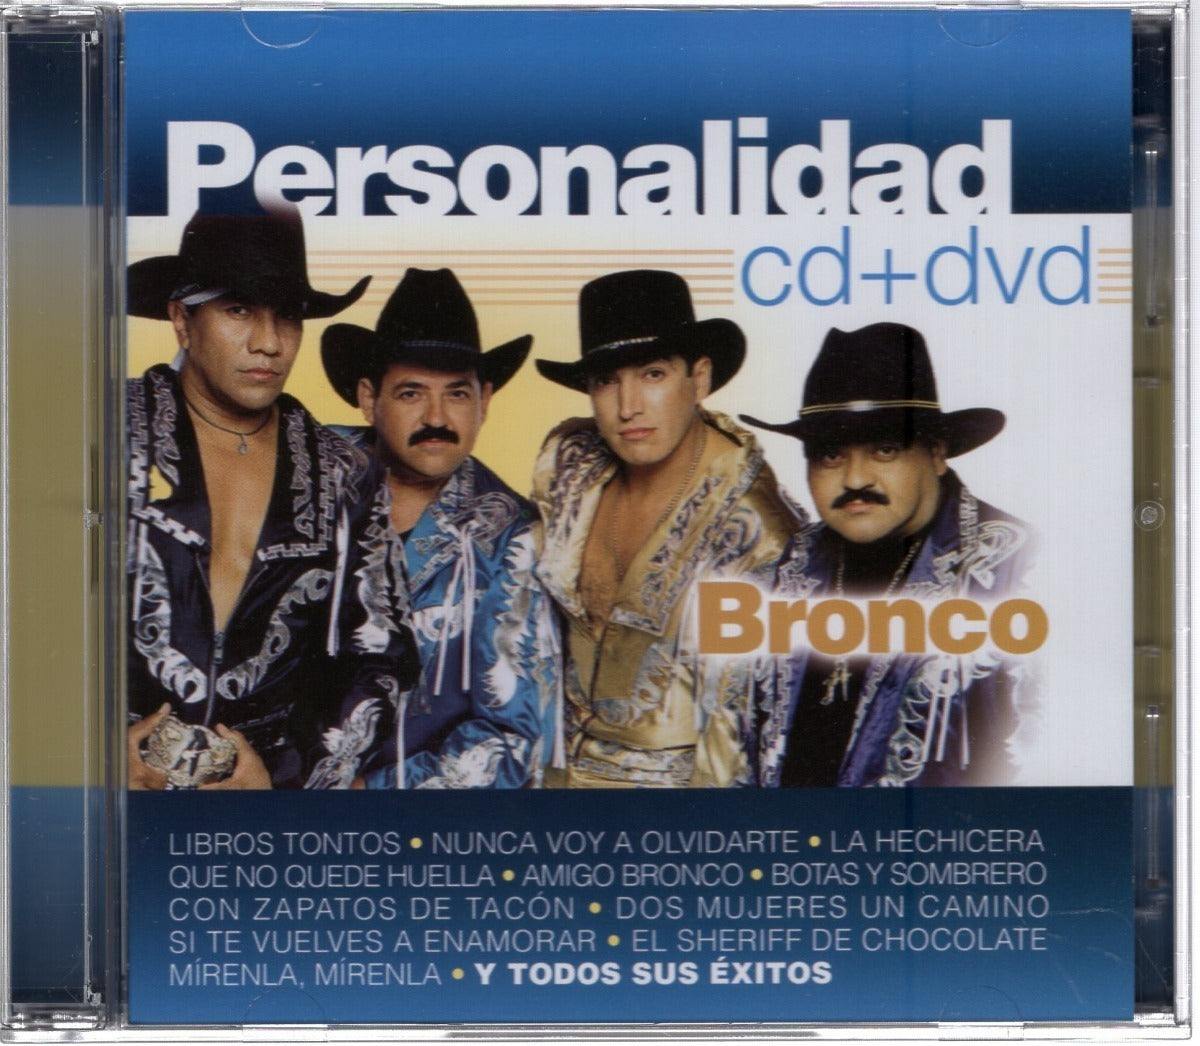 Bronco Personalidad Disco Cd + Dvd